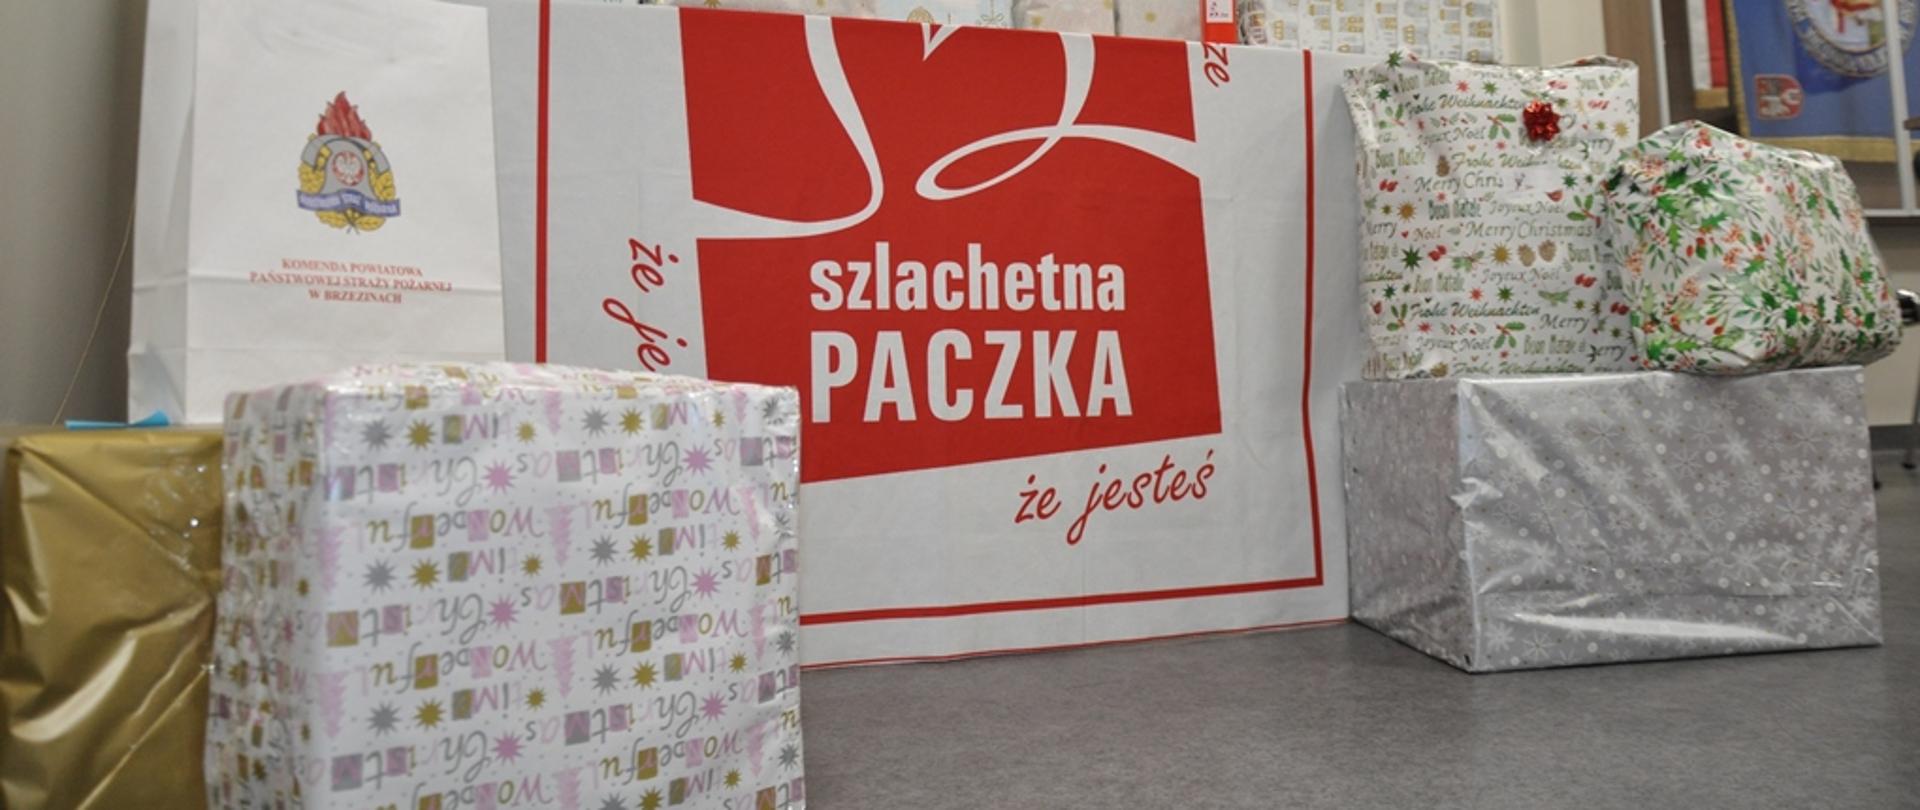 Zakupione prezenty przez brzezińskich strażaków PSP ok. 20 pakunków zapakowanych w świąteczny papier. Duży plakat z napisem "Szlachetna Paczka". Prezenty w pomieszczeniu komendy PSP w Brzezinach.